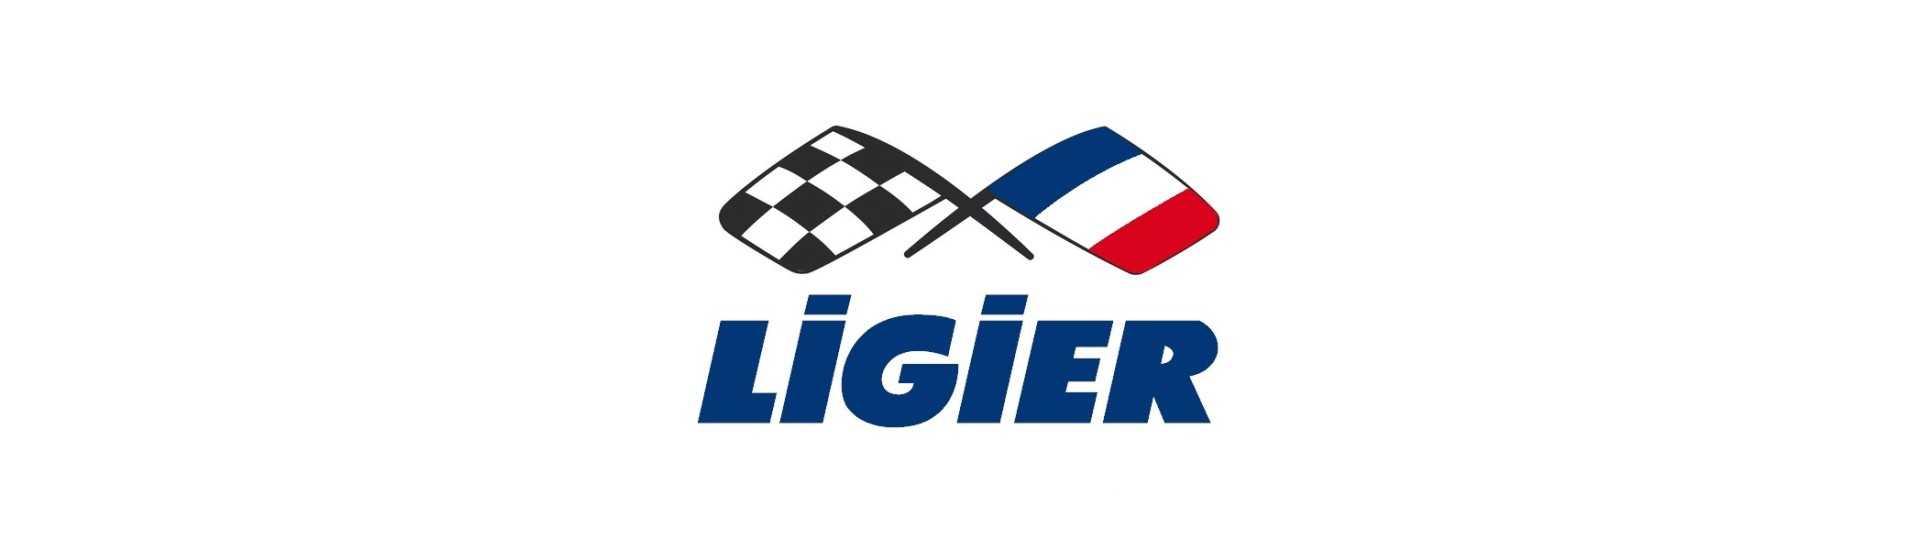 Carrosserie zum besten Preis für Auto ohne Lizenz Ligier